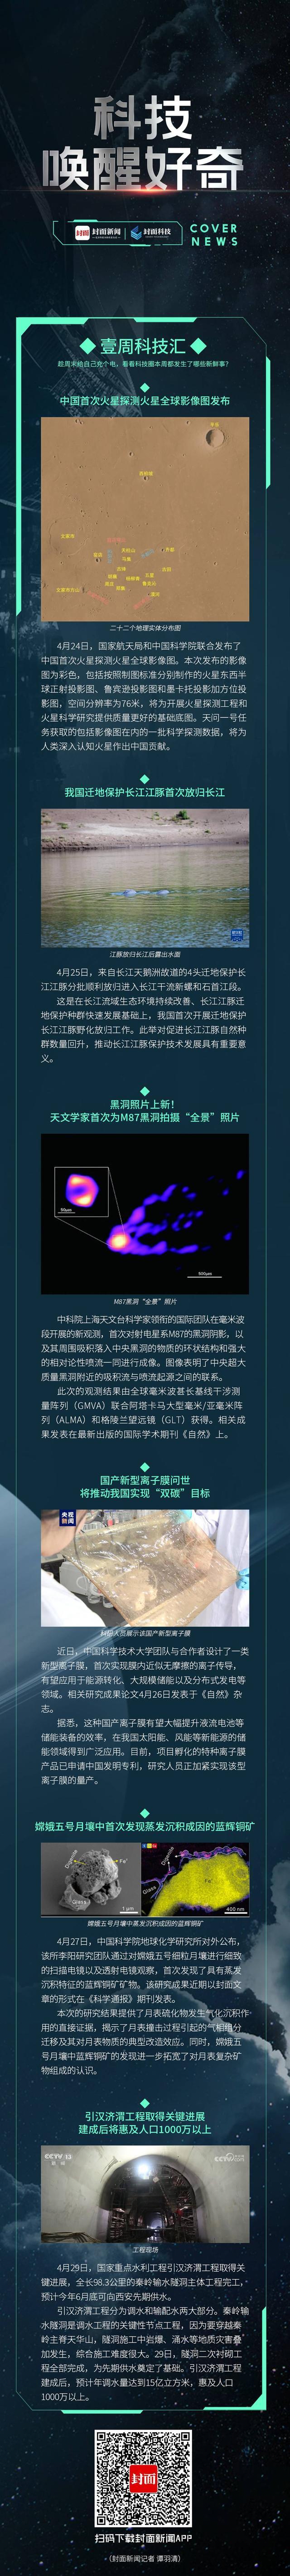 壹周科技汇｜黑洞“全景”照片发布 国产新型离子膜问世